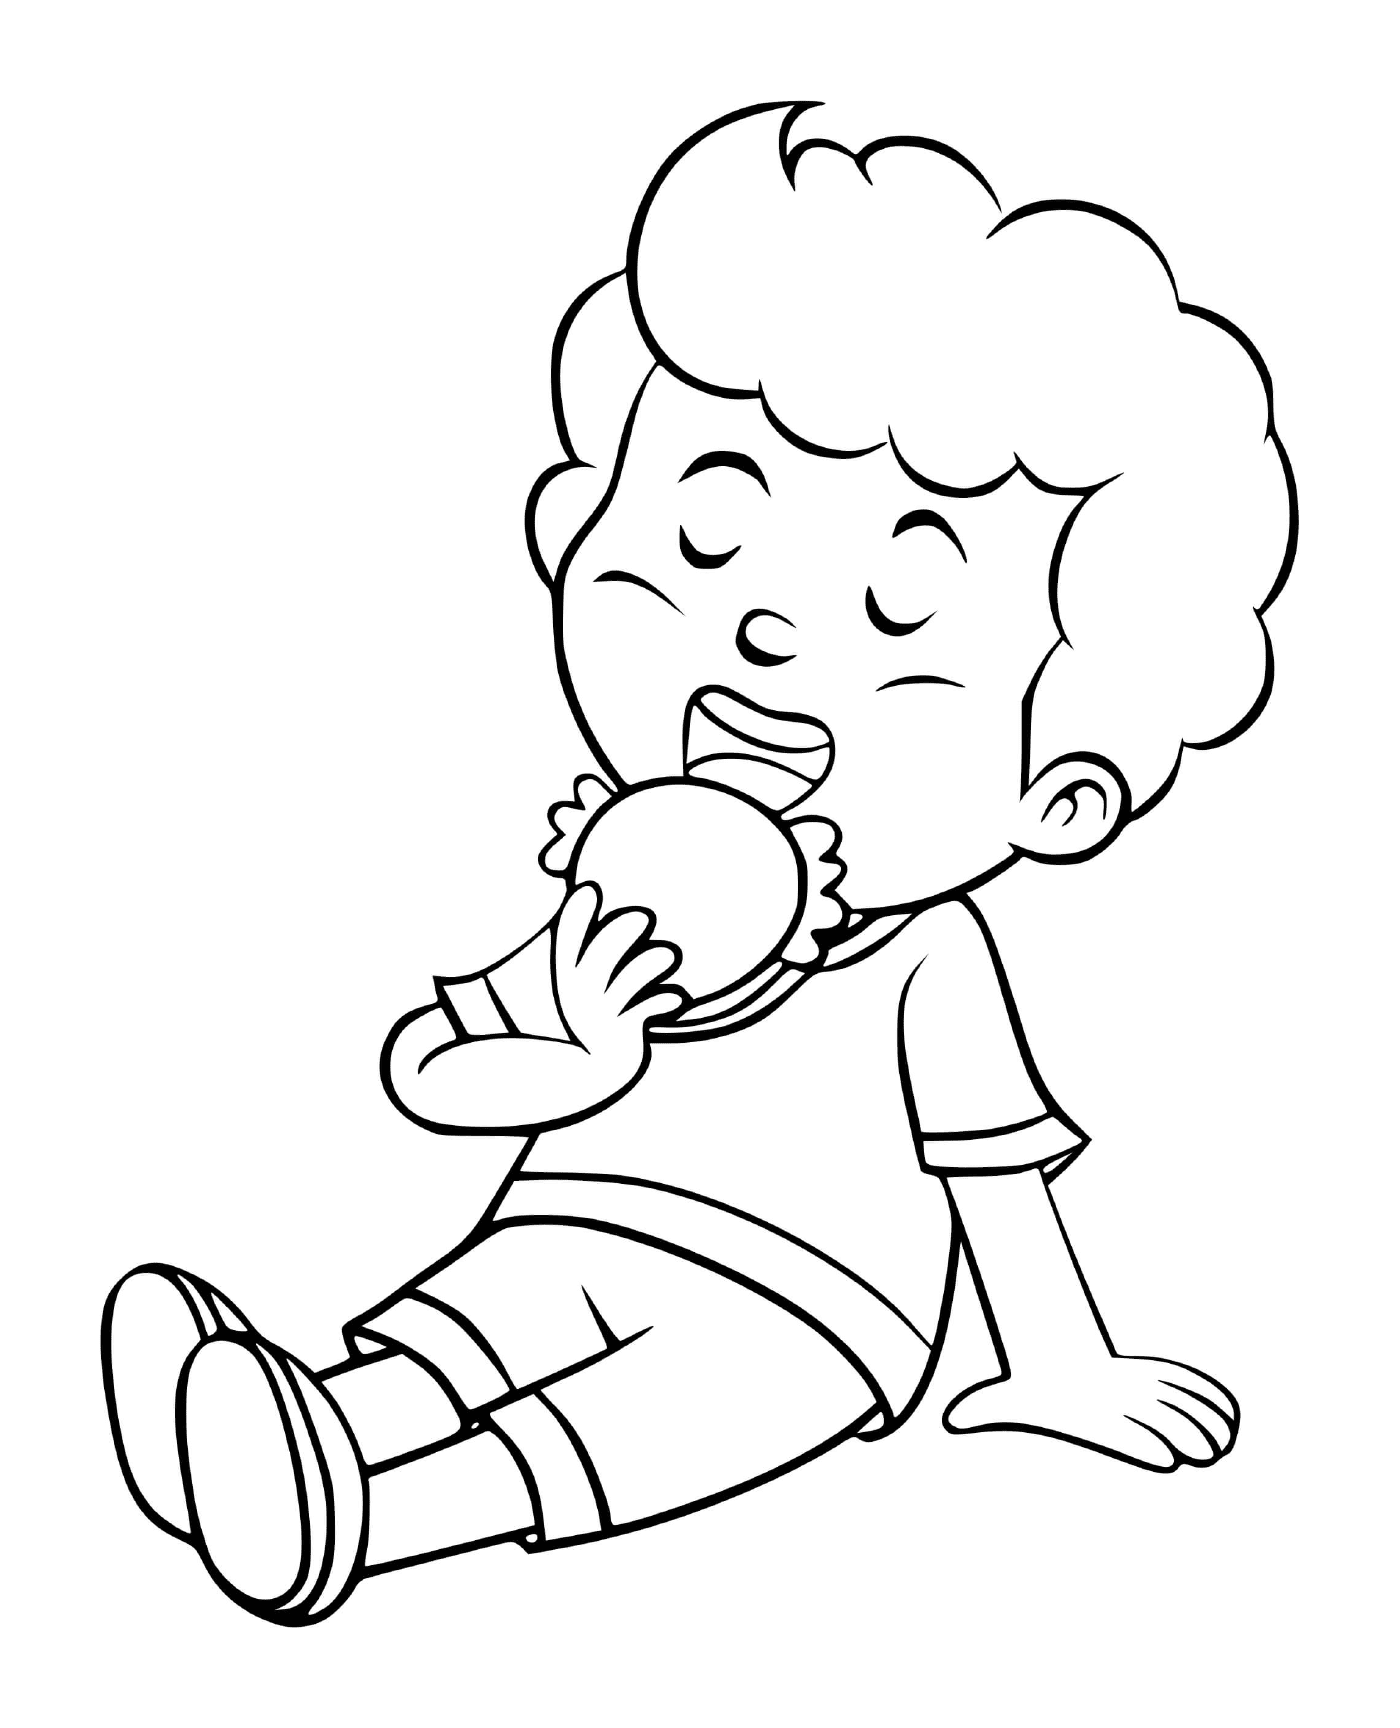  एक लड़का पेट भर खाना खाता है 